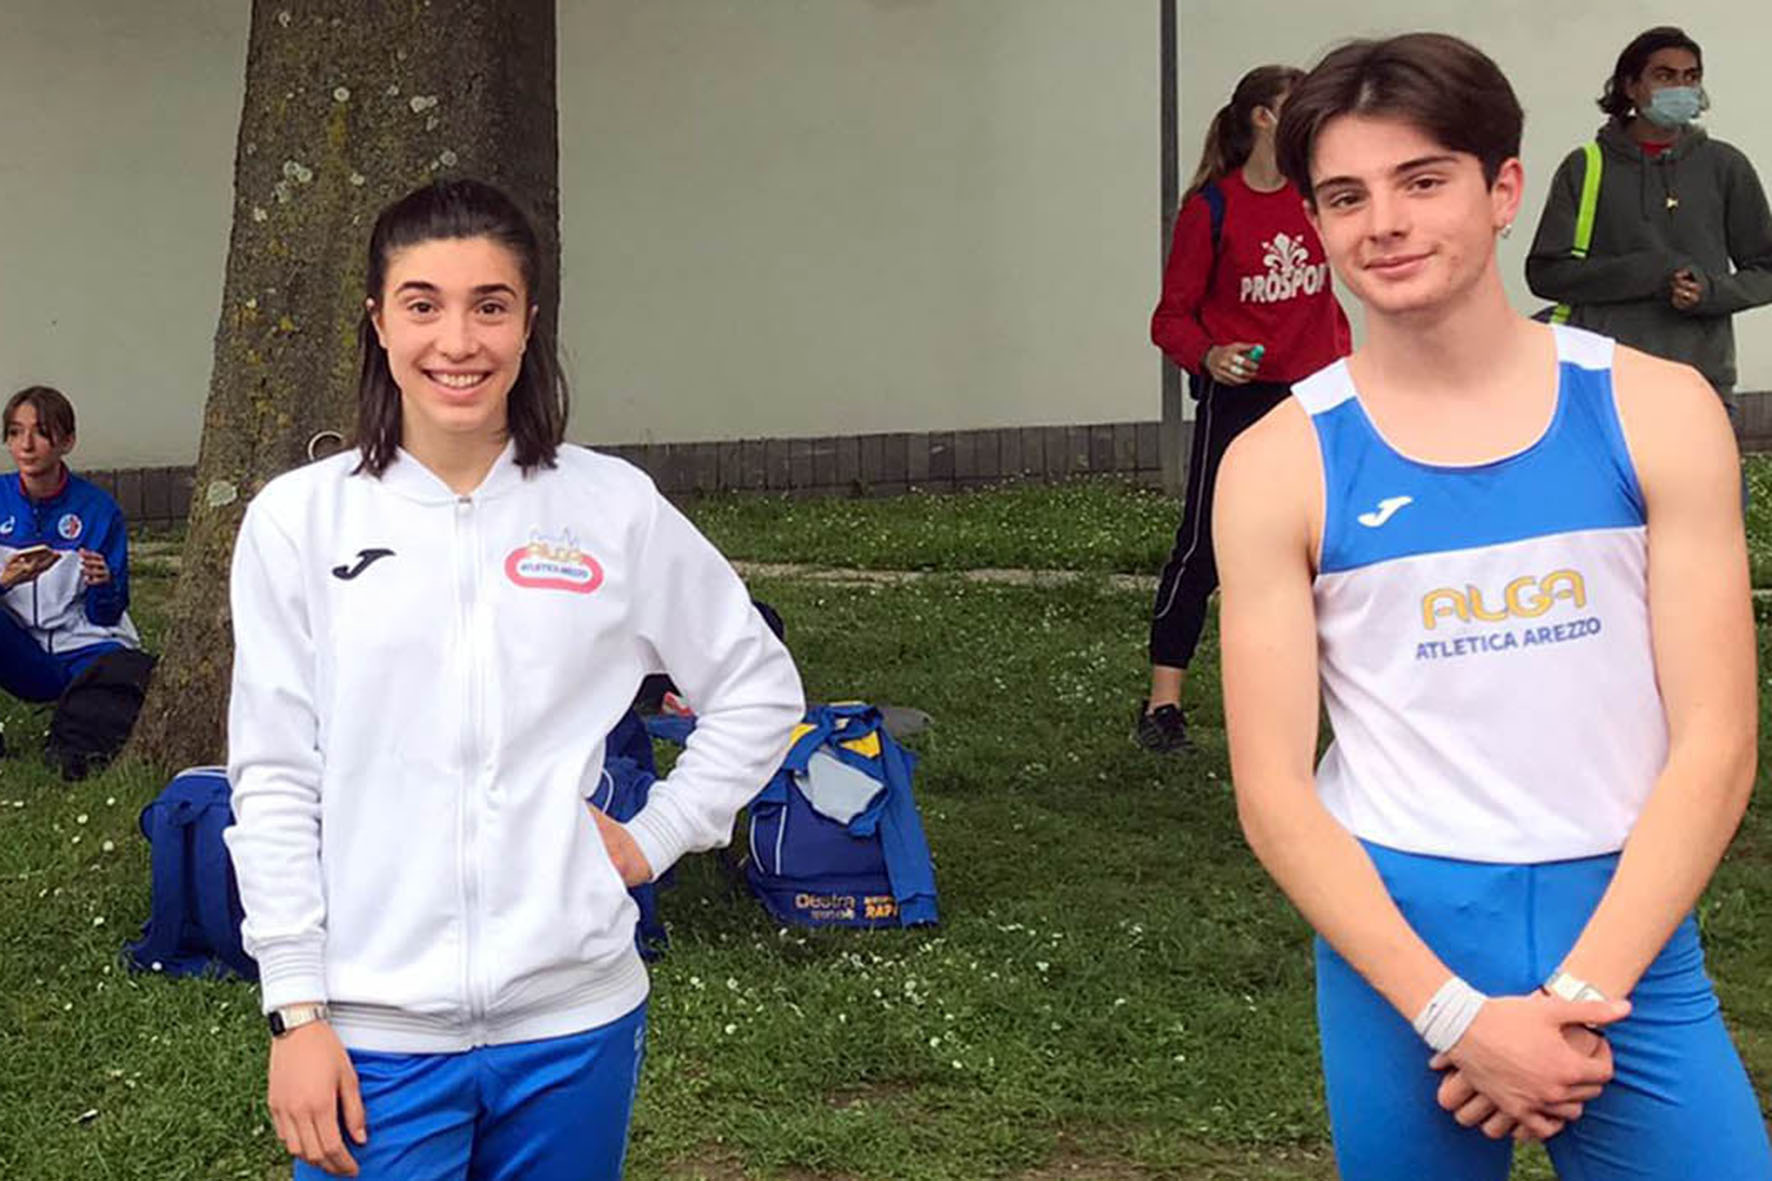 Tre ragazzi dell’Alga Atletica Arezzo ai Campionati Italiani Allievi Indoor 